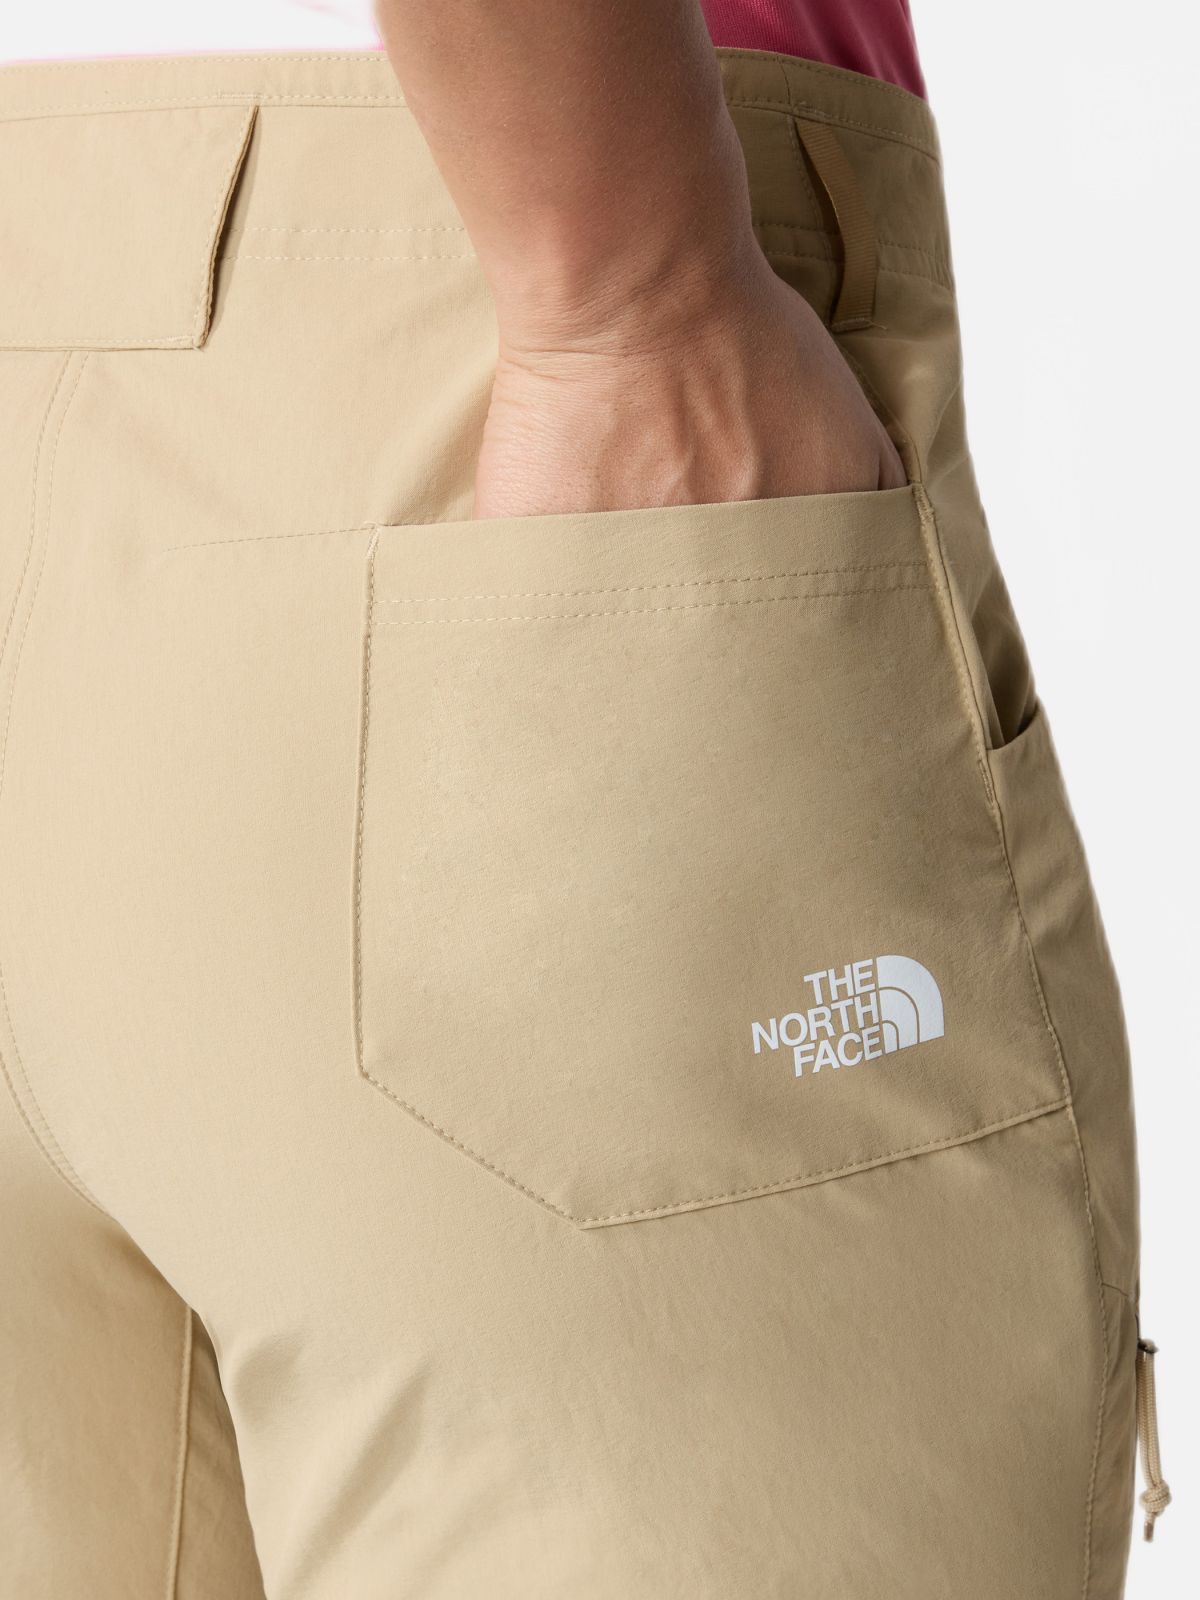  מכנסיים ארוכים עם לוגו / נשים של THE NORTH FACE